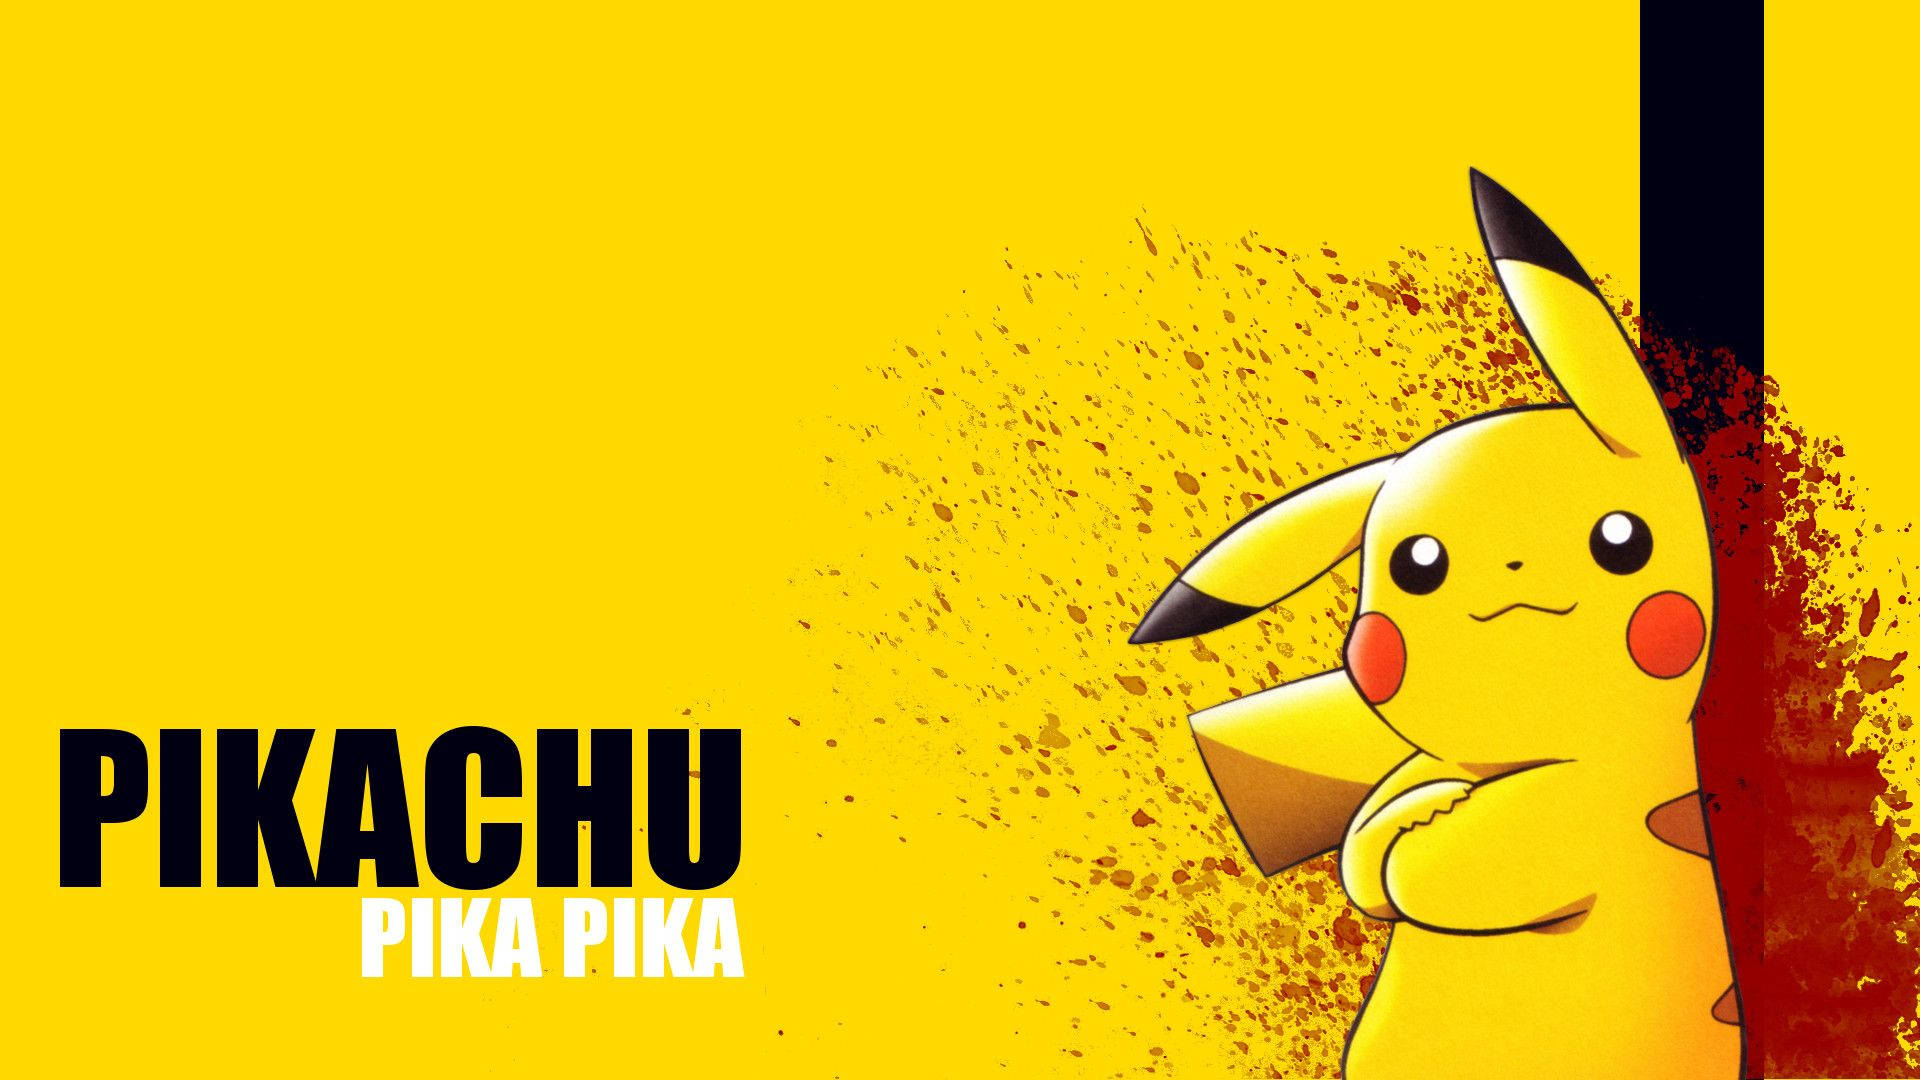 Pikachu 3d Original Pokémon